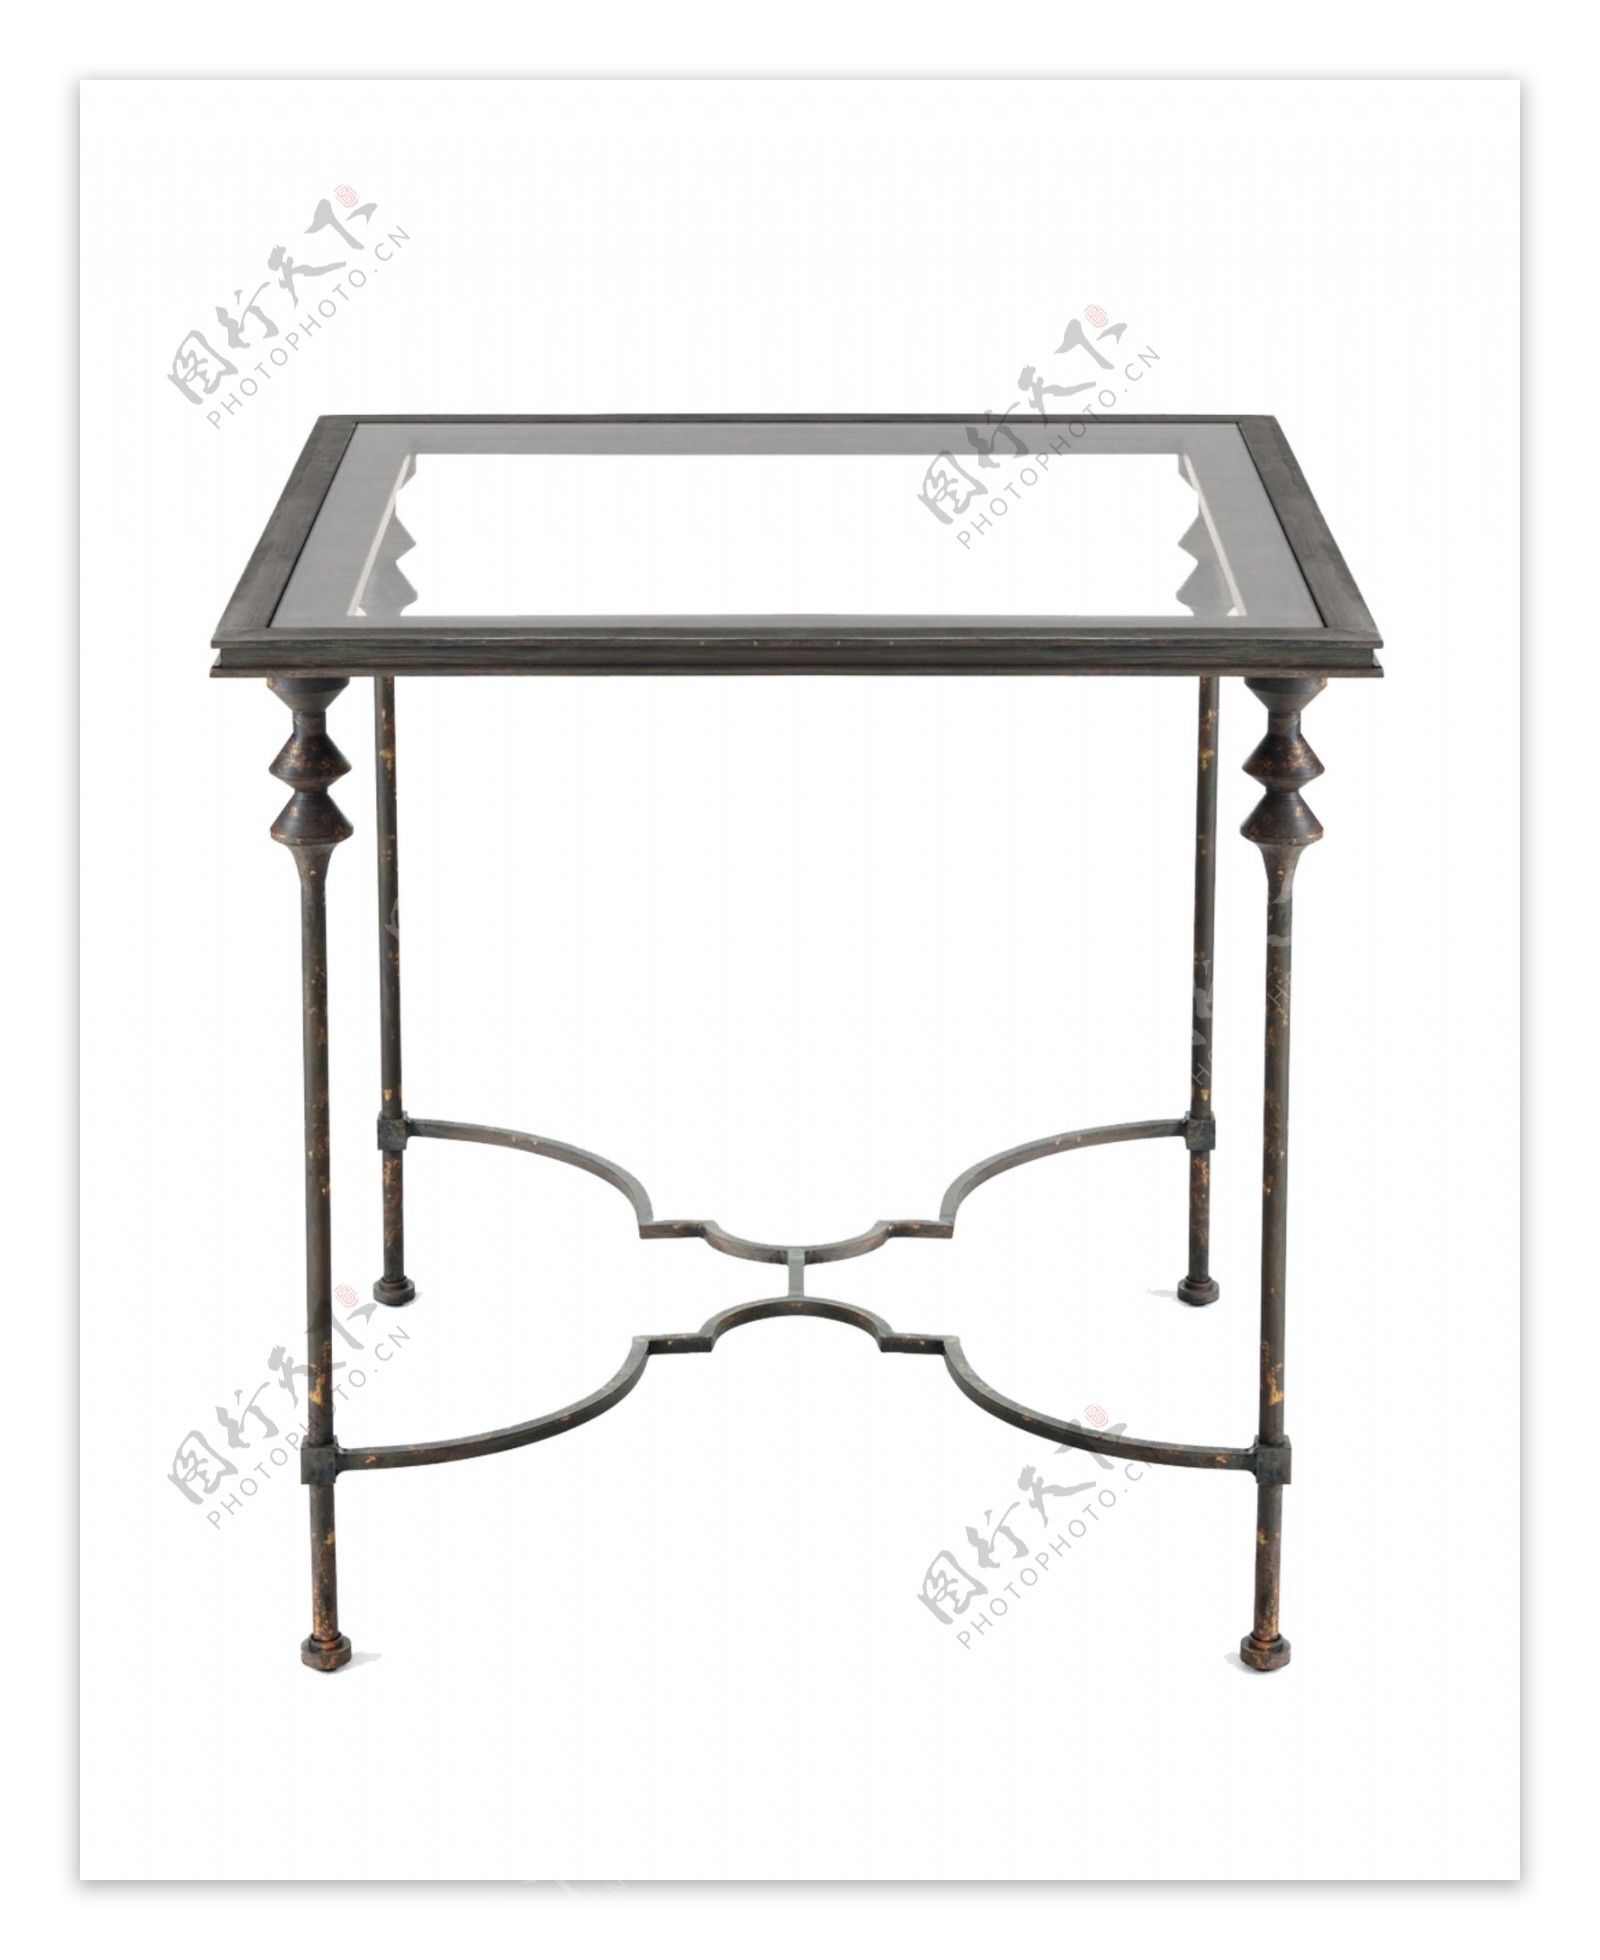 简约铁艺方形桌子设计